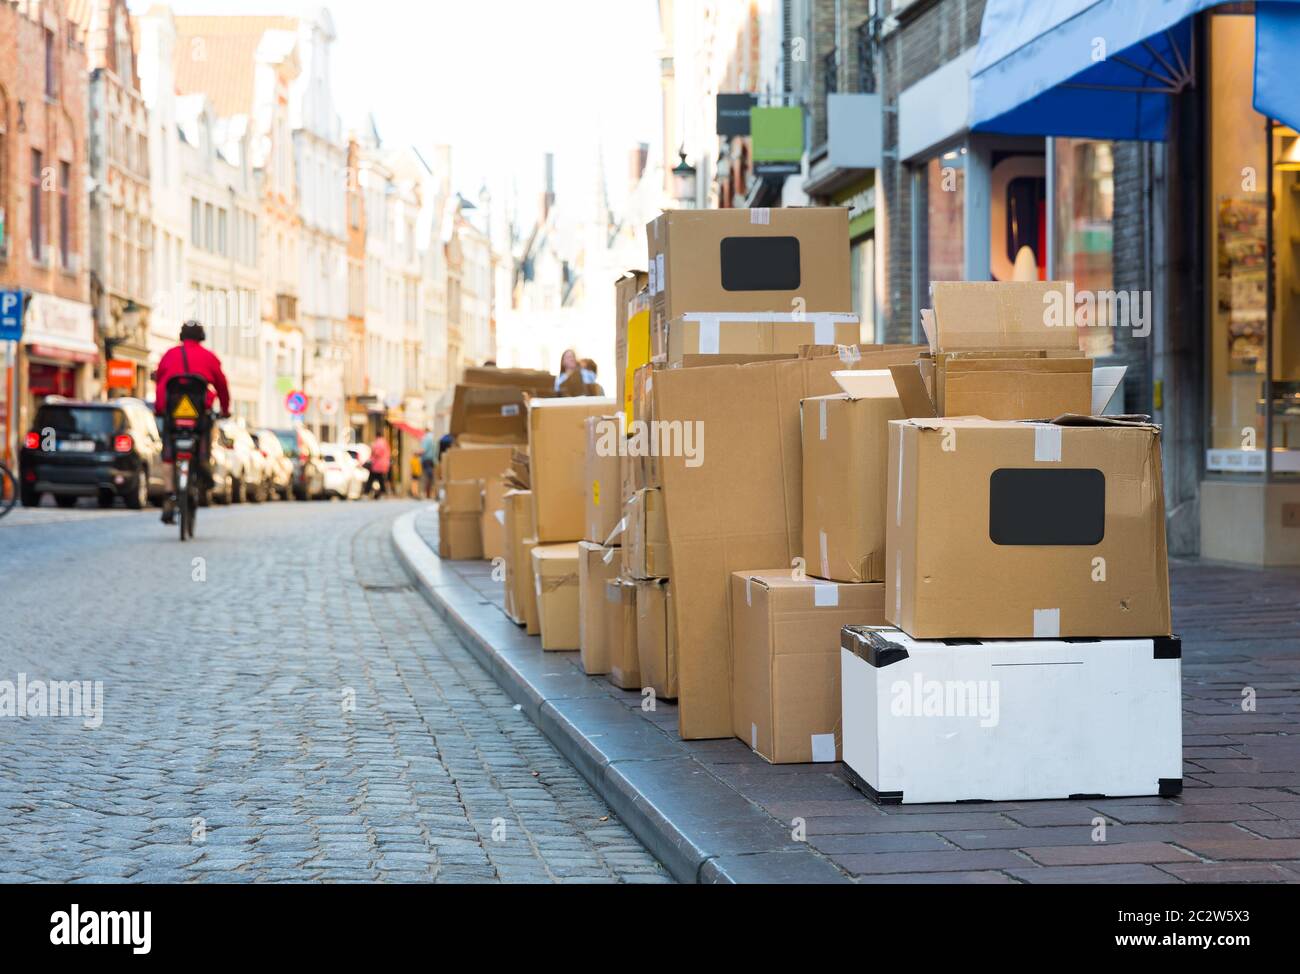 Boîtes à déchets carton sur trottoir, ville européenne Photo Stock - Alamy